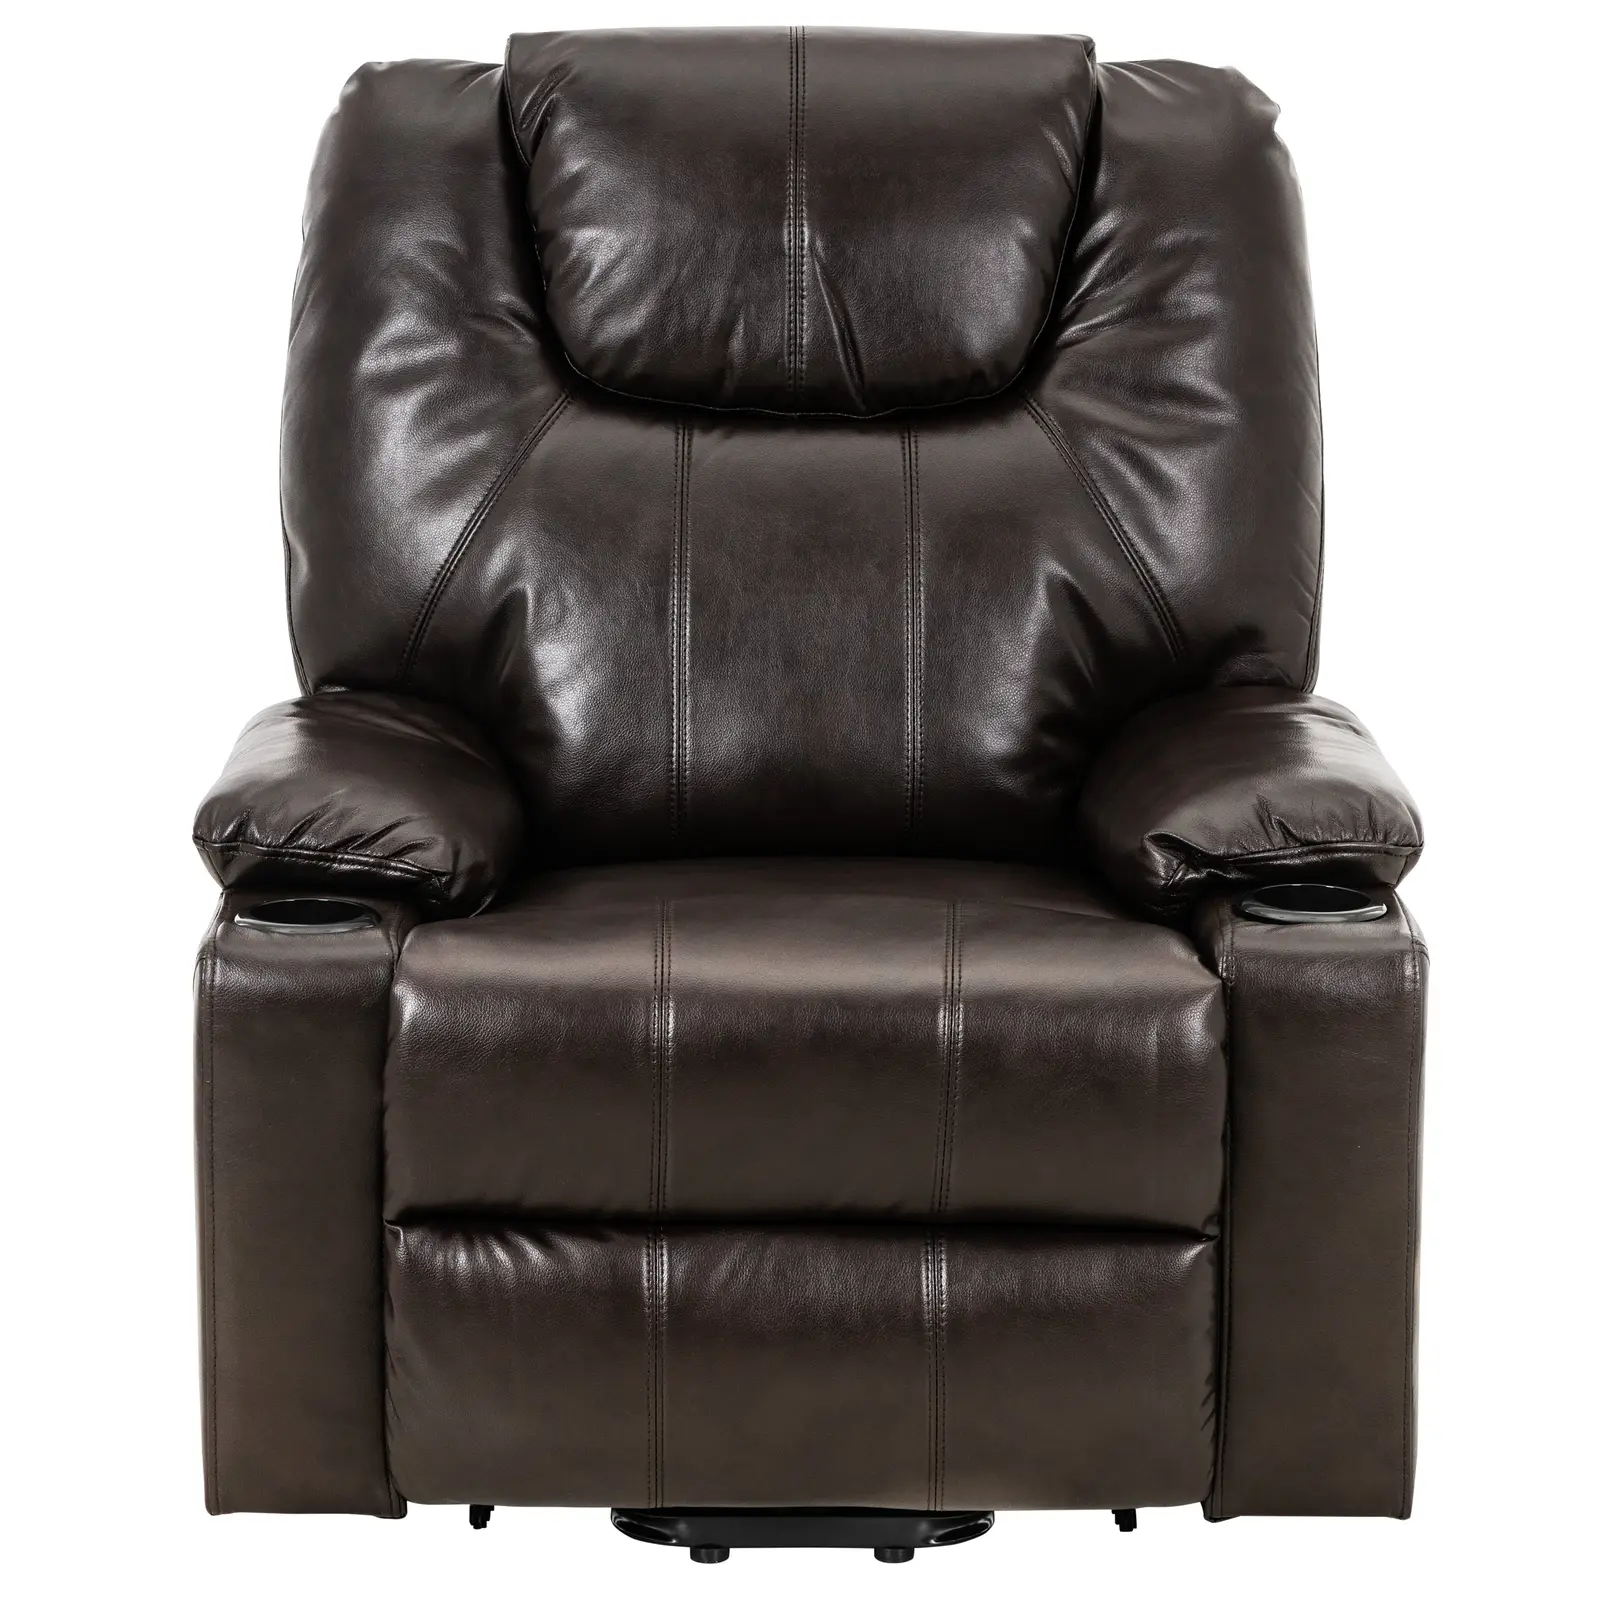 Θερμαινόμενη καρέκλα μασάζ με βοηθητικό στήριγμα - Μηδενική βαρύτητα - 4 τμήματα / 8 σημεία δόνησης - καφέ